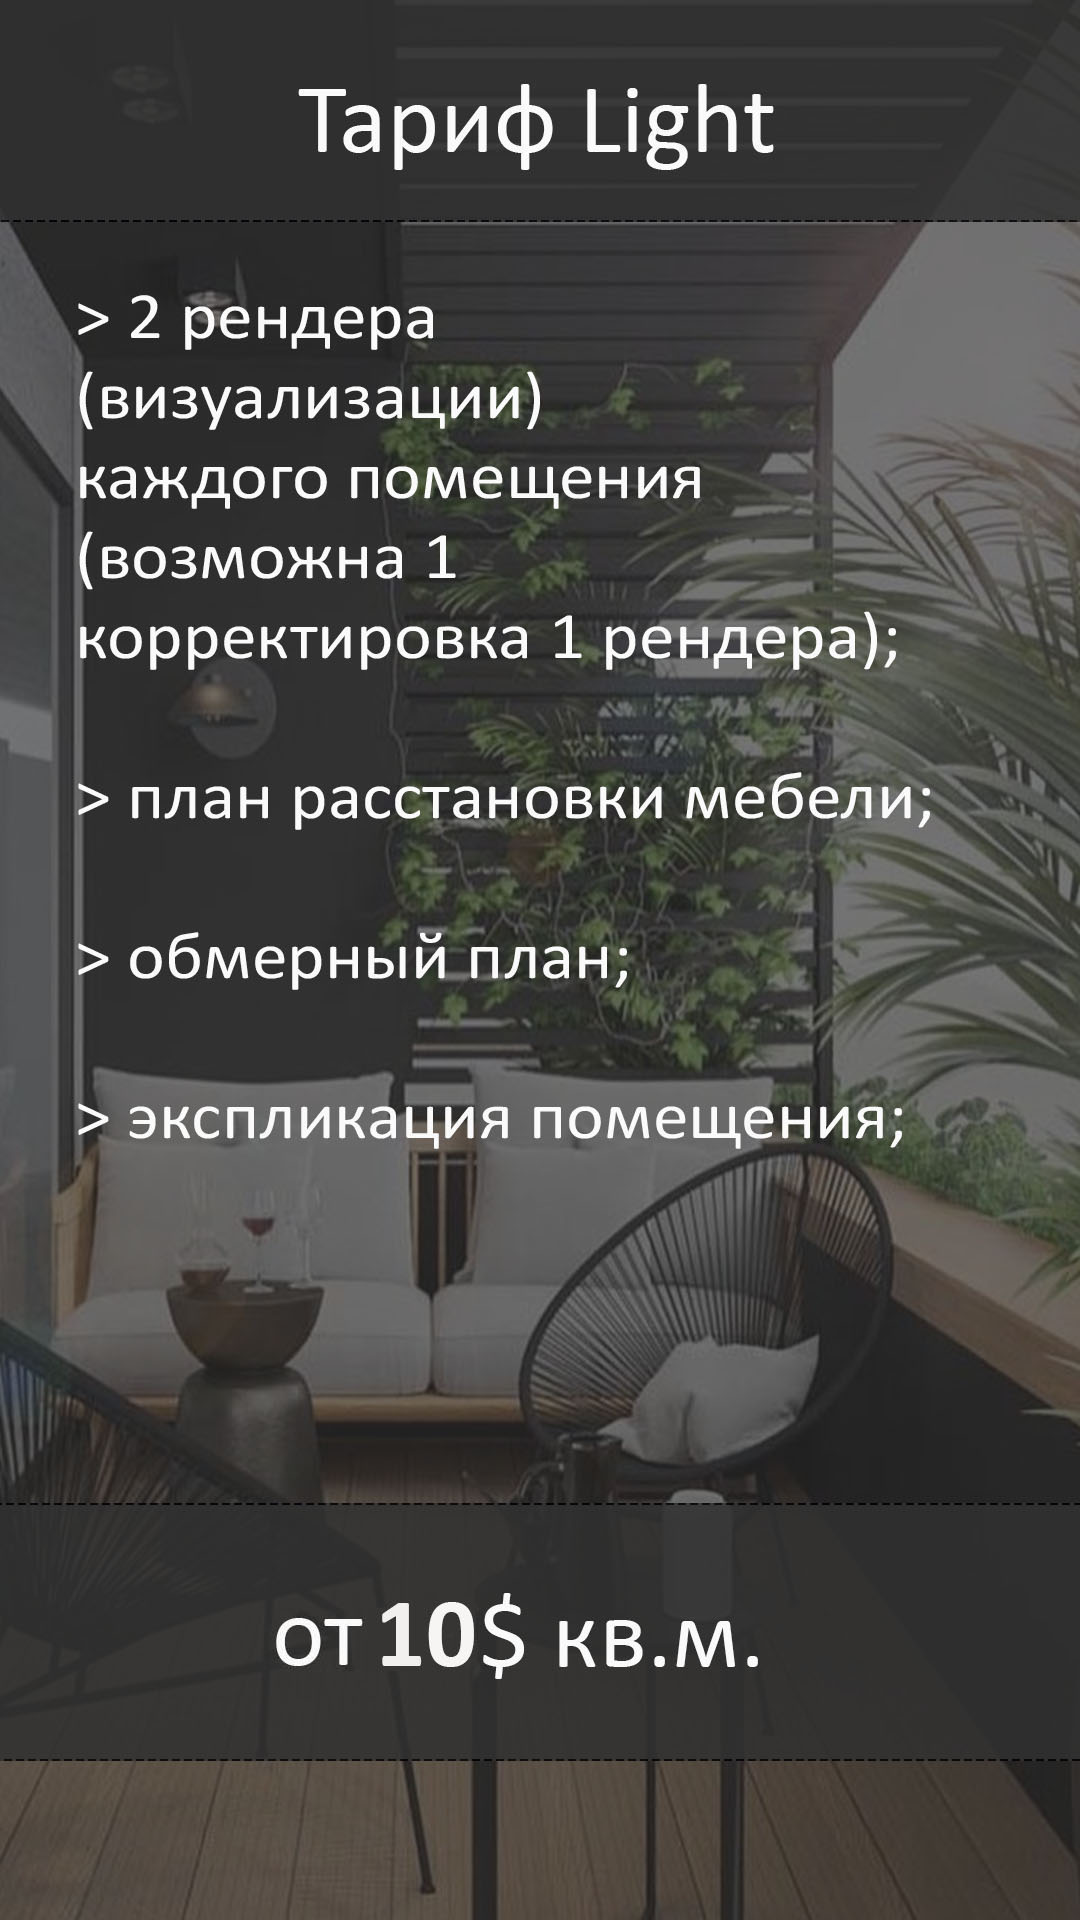 Заказать дизайн проект интерьера квартиры недорого в Москве